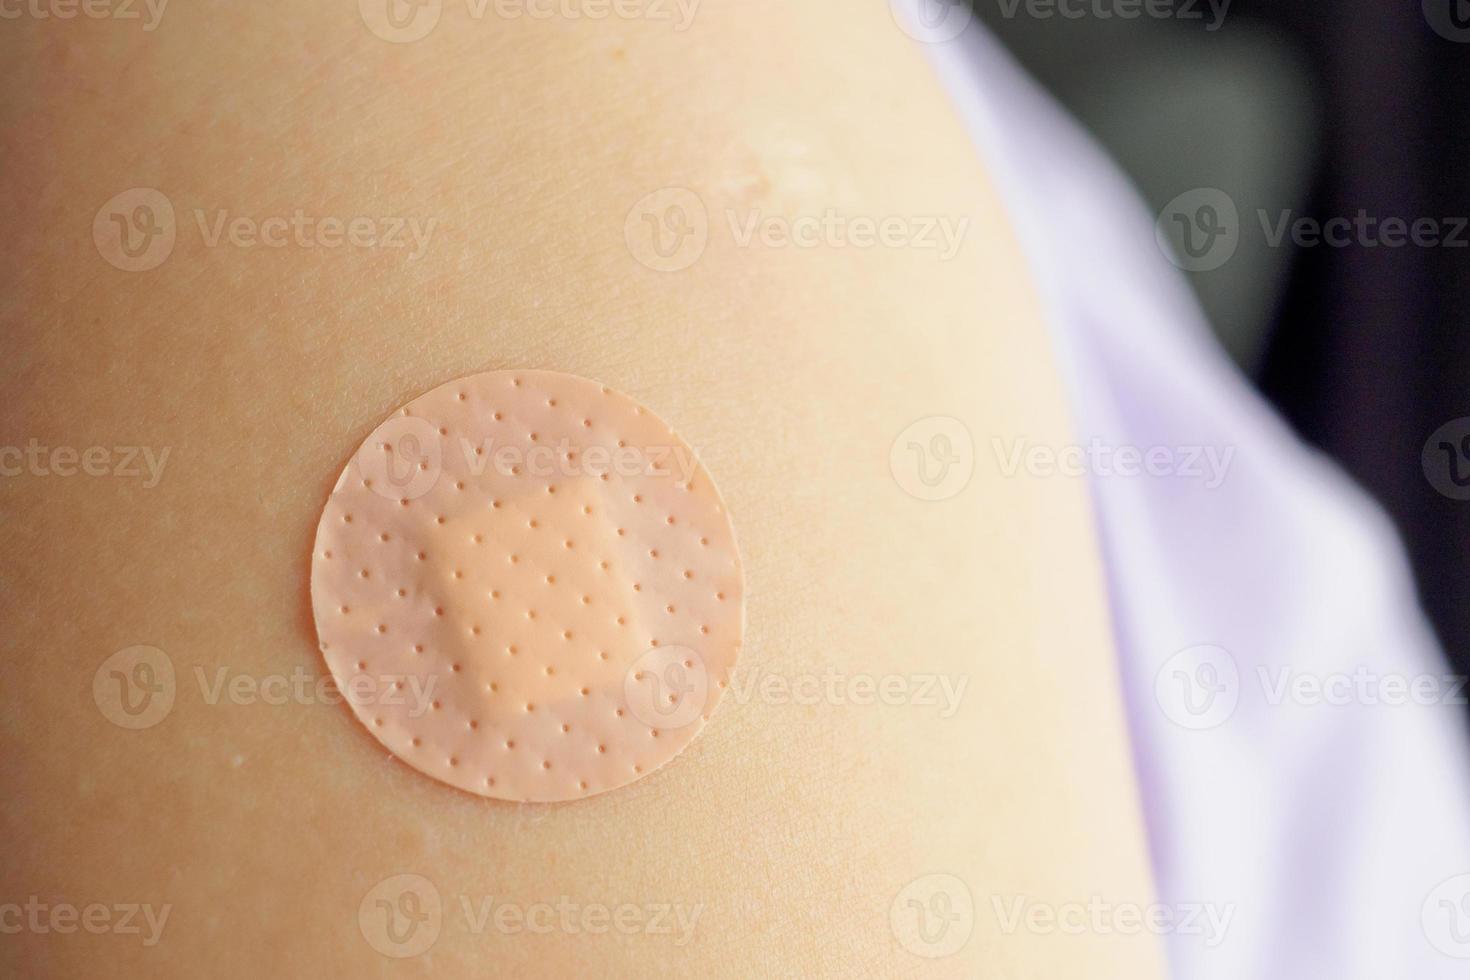 cerrar el vendaje adhesivo marrón circular en el brazo del paciente después de la inyección o vacunación del medicamento foto